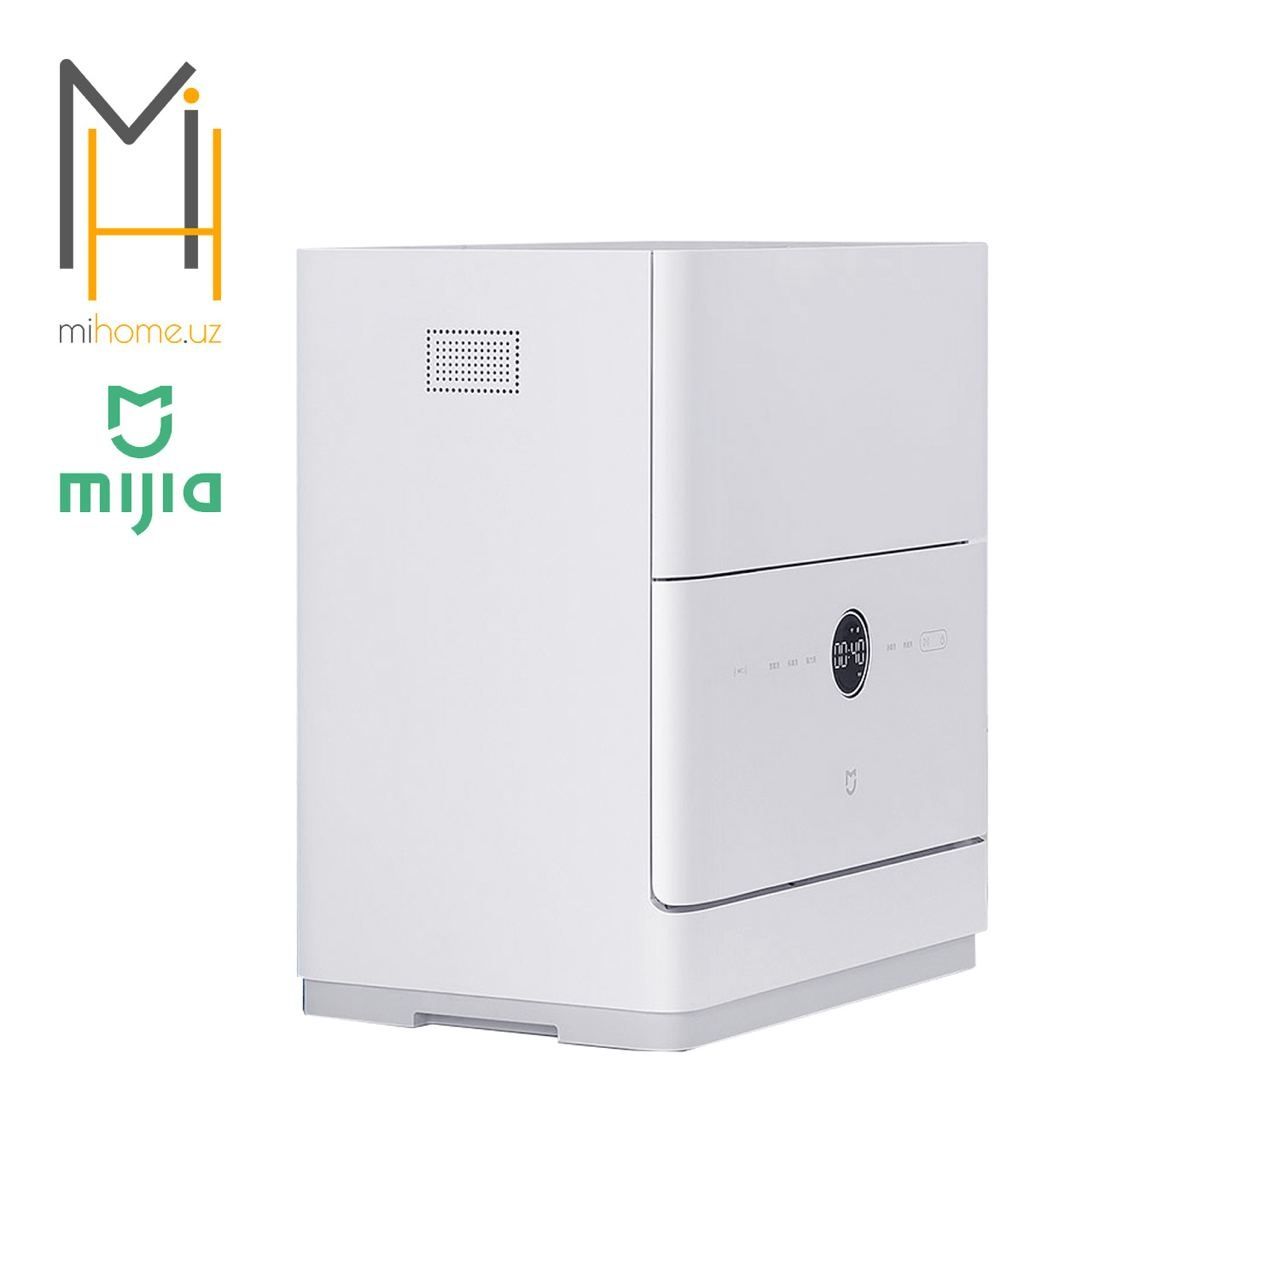 Настольная посудомоечная машина Milia Smart Desktop Dishwasher S1 5 Se